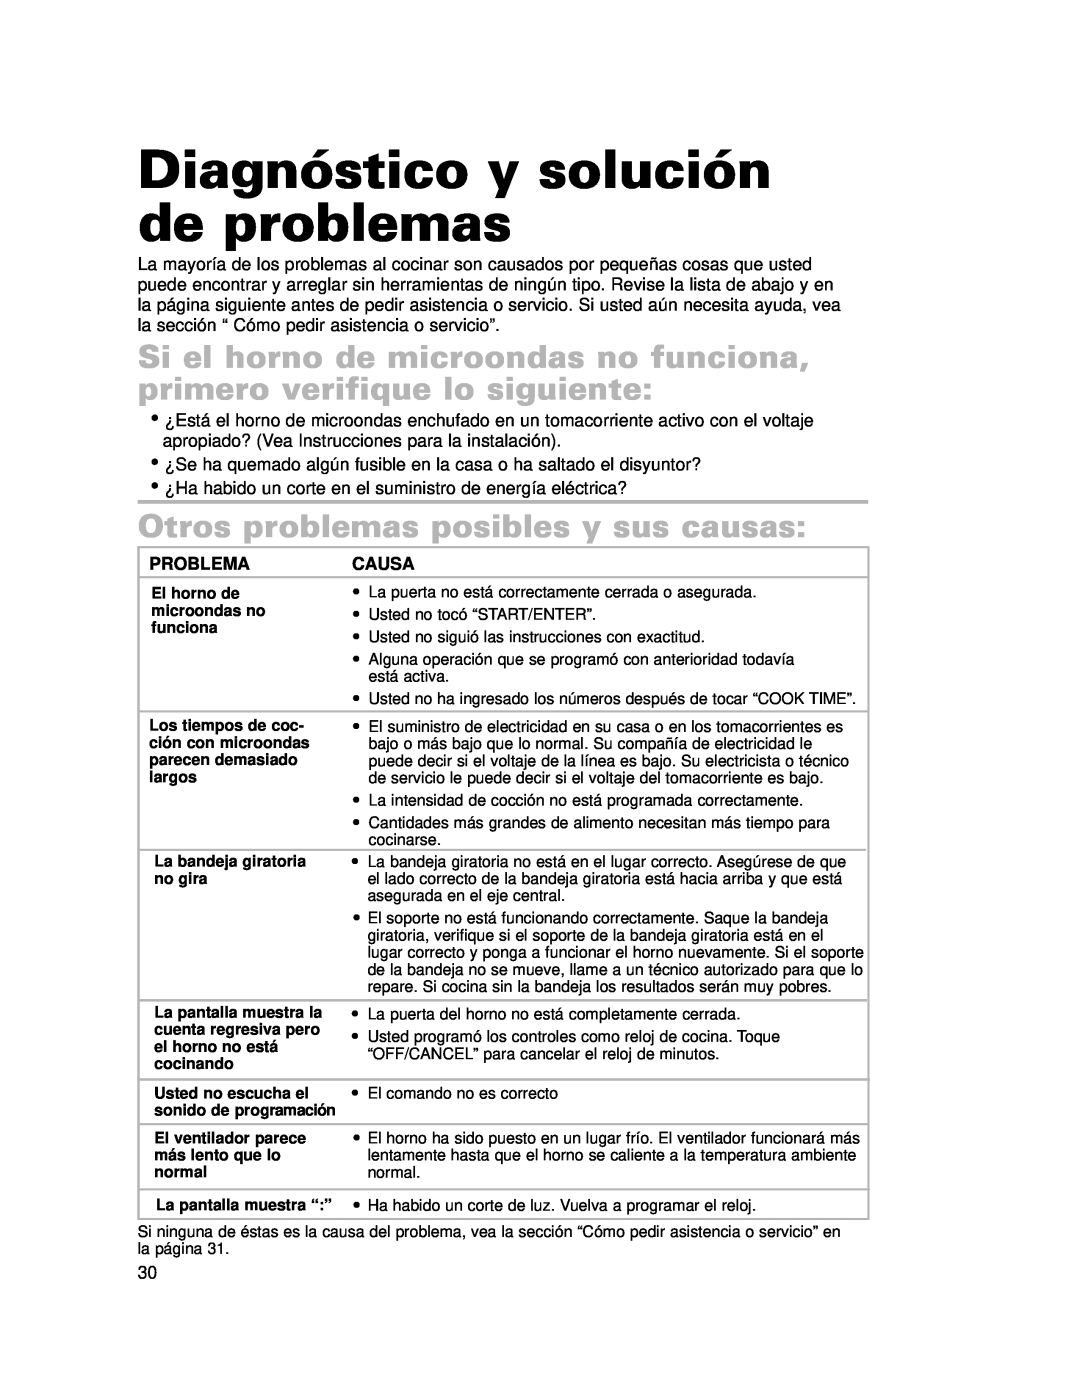 Whirlpool CMT102SG installation instructions Diagnóstico y solución de problemas, Otros problemas posibles y sus causas 